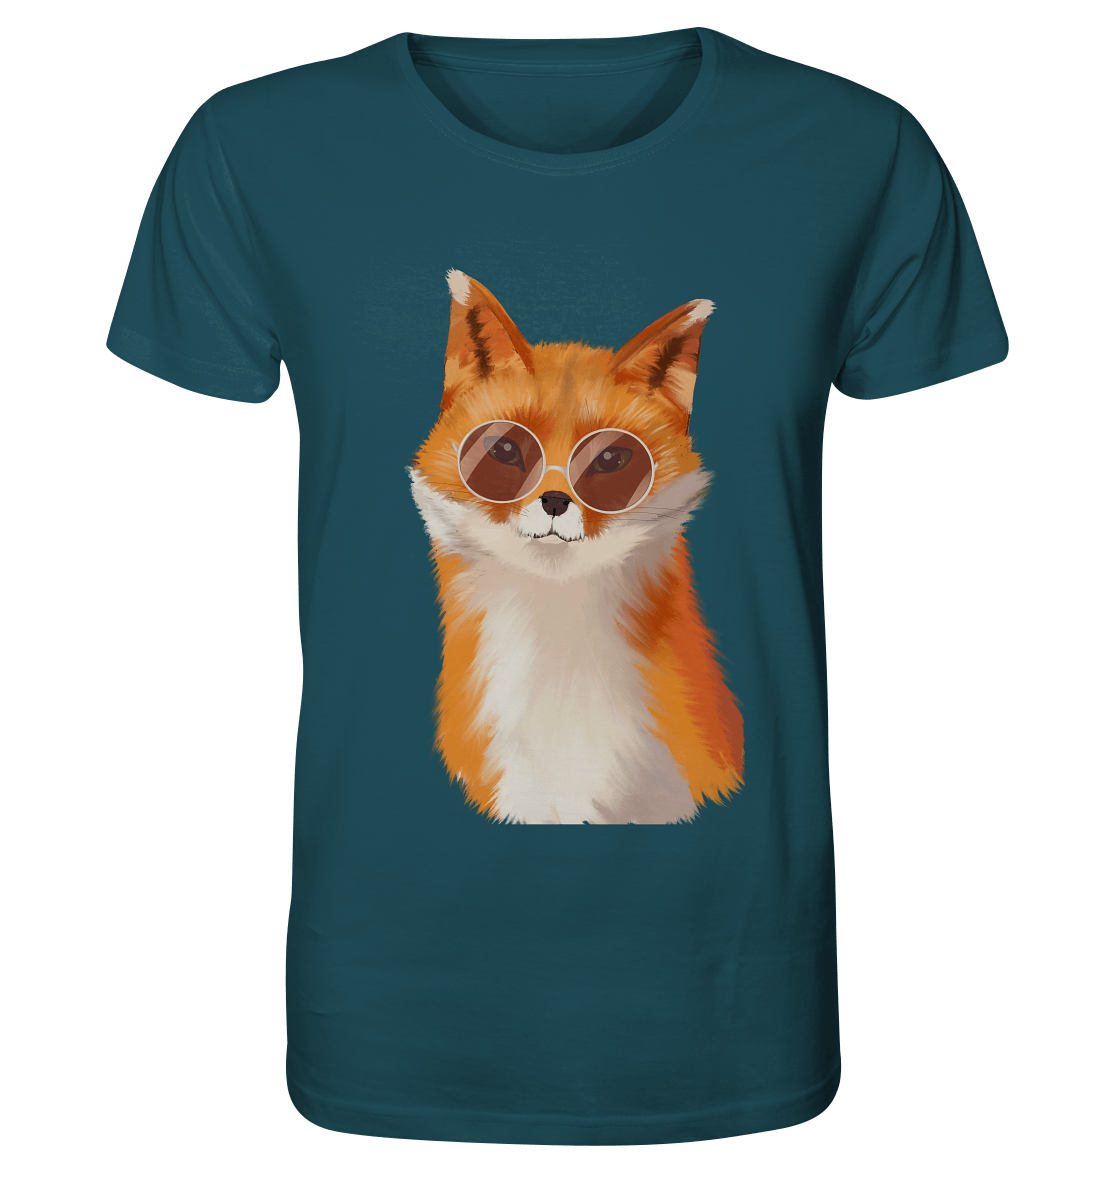 Herren T-Shirt "Fuchs" mit Fuchs Zeichnung von BLOOMINIC